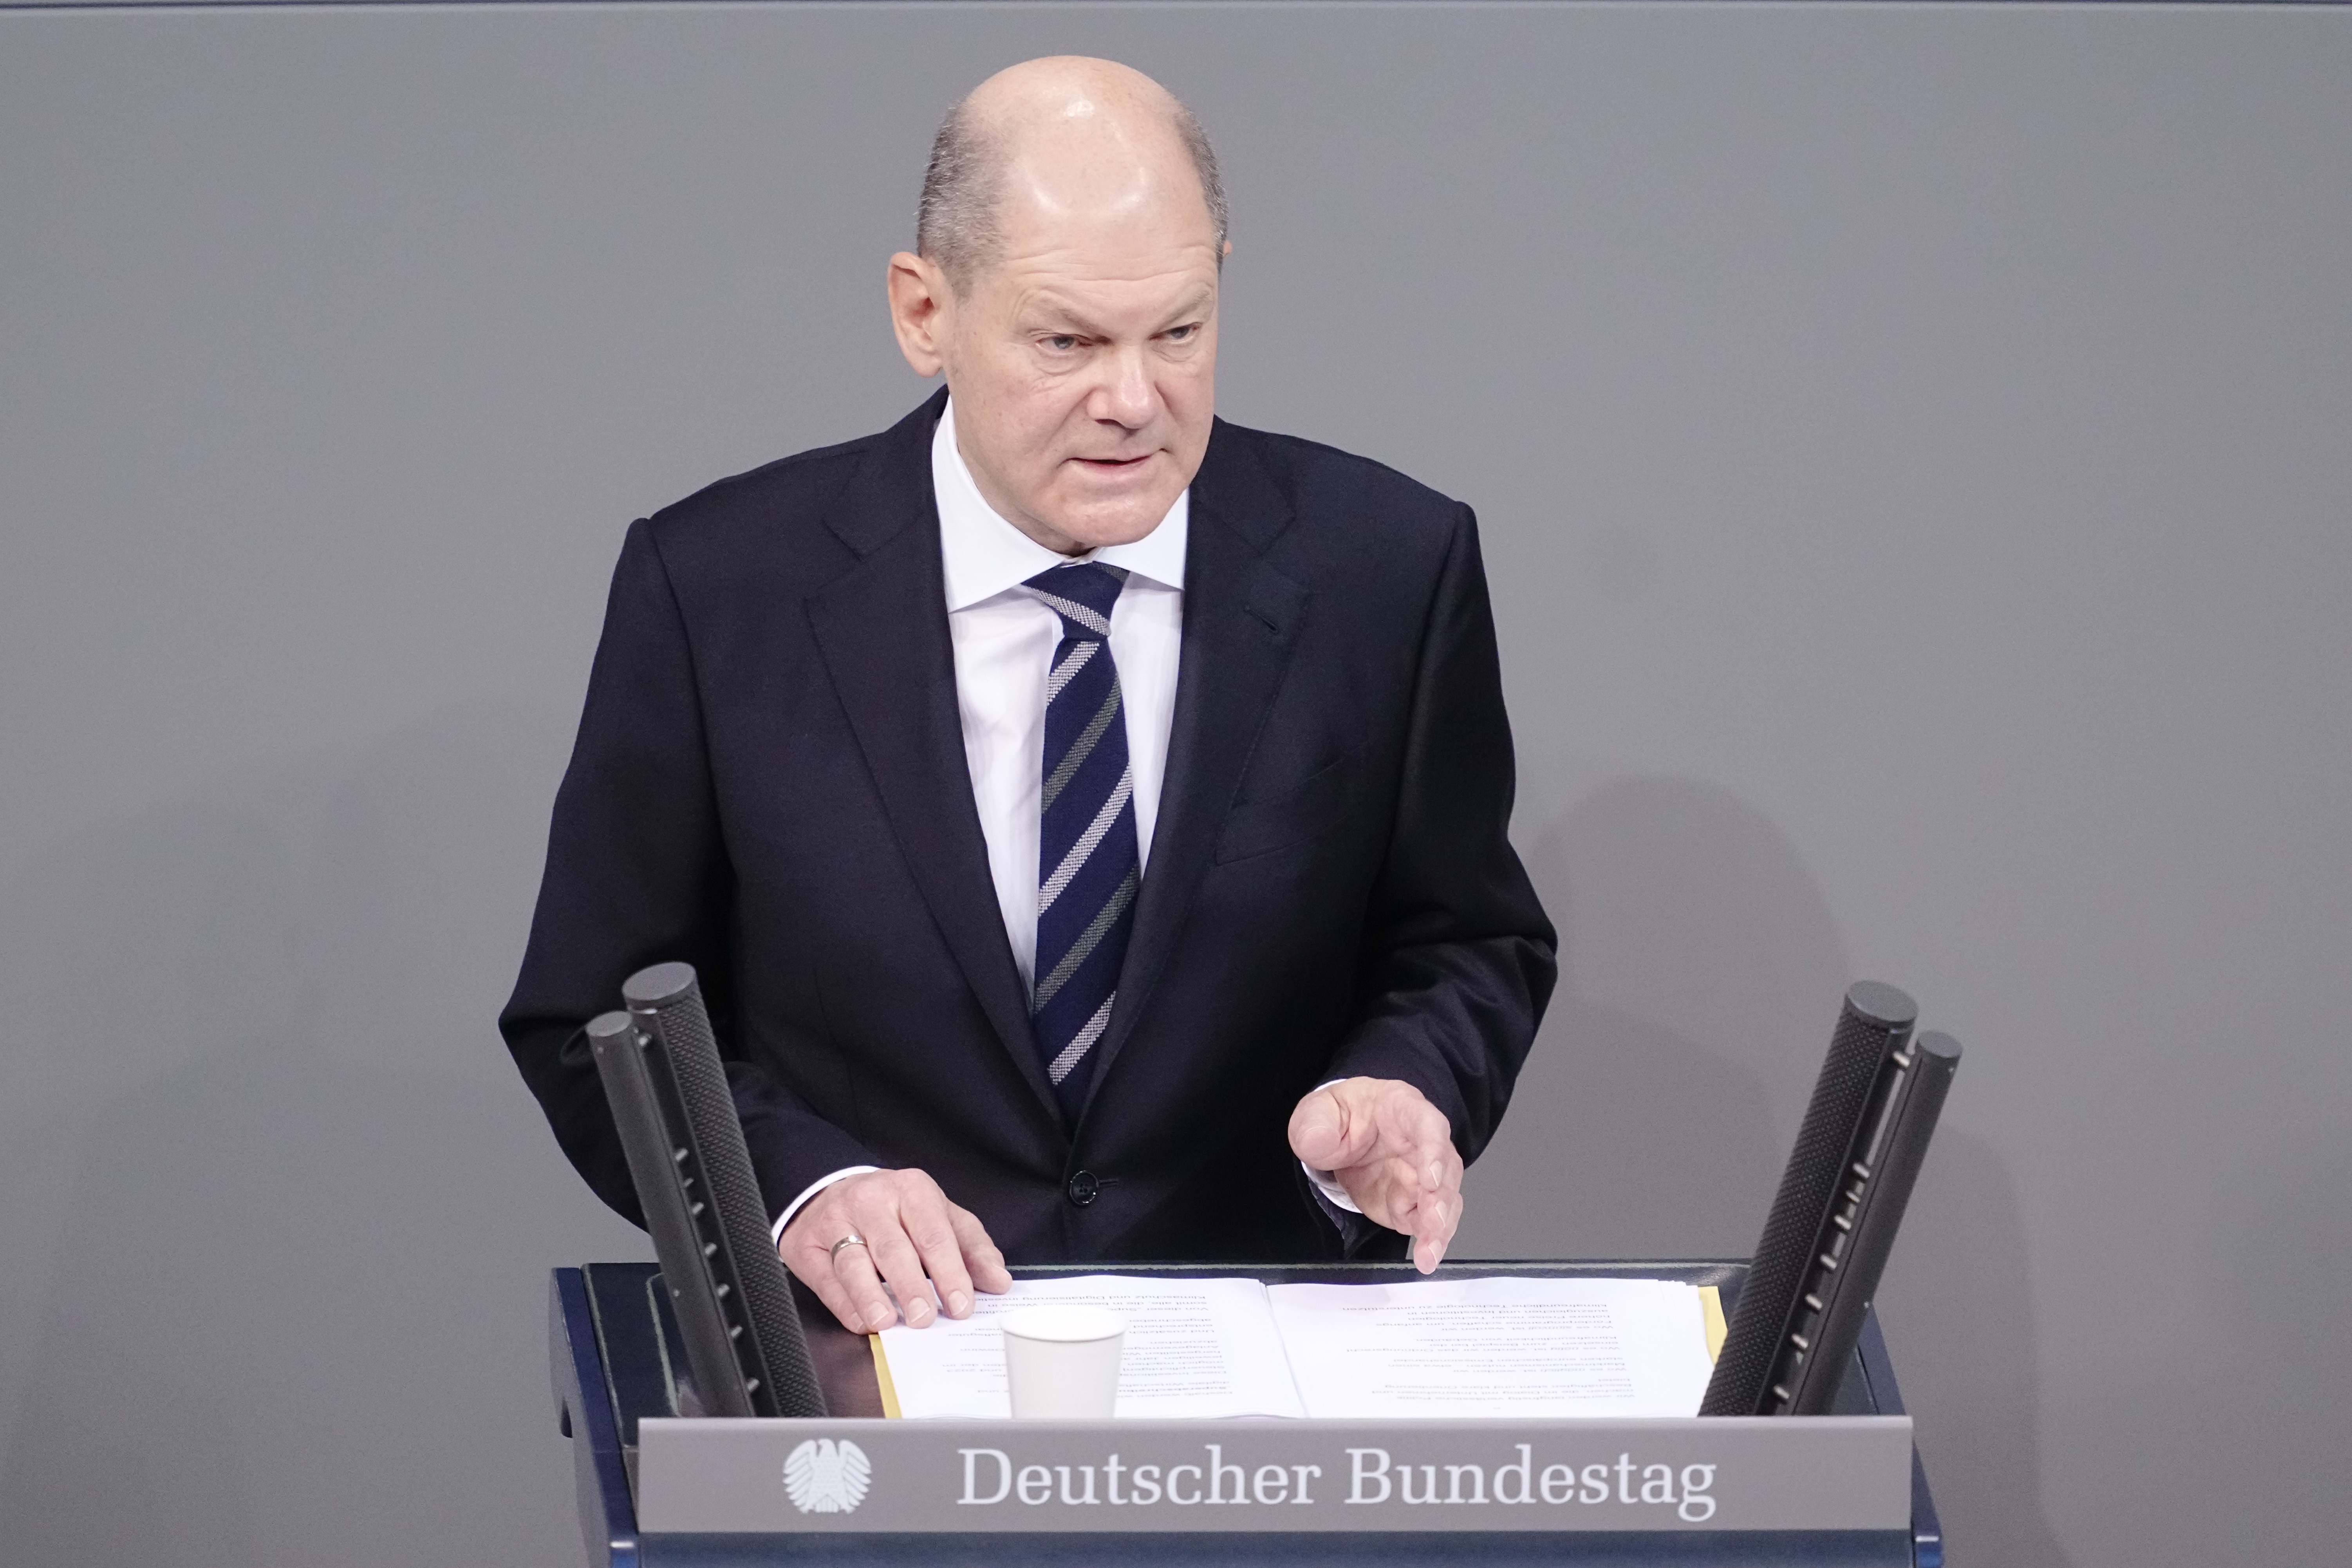  المستشار الألماني أولاف شولز يلقي أول بيان حكومي له في البرلمان الألماني(د ب أ)